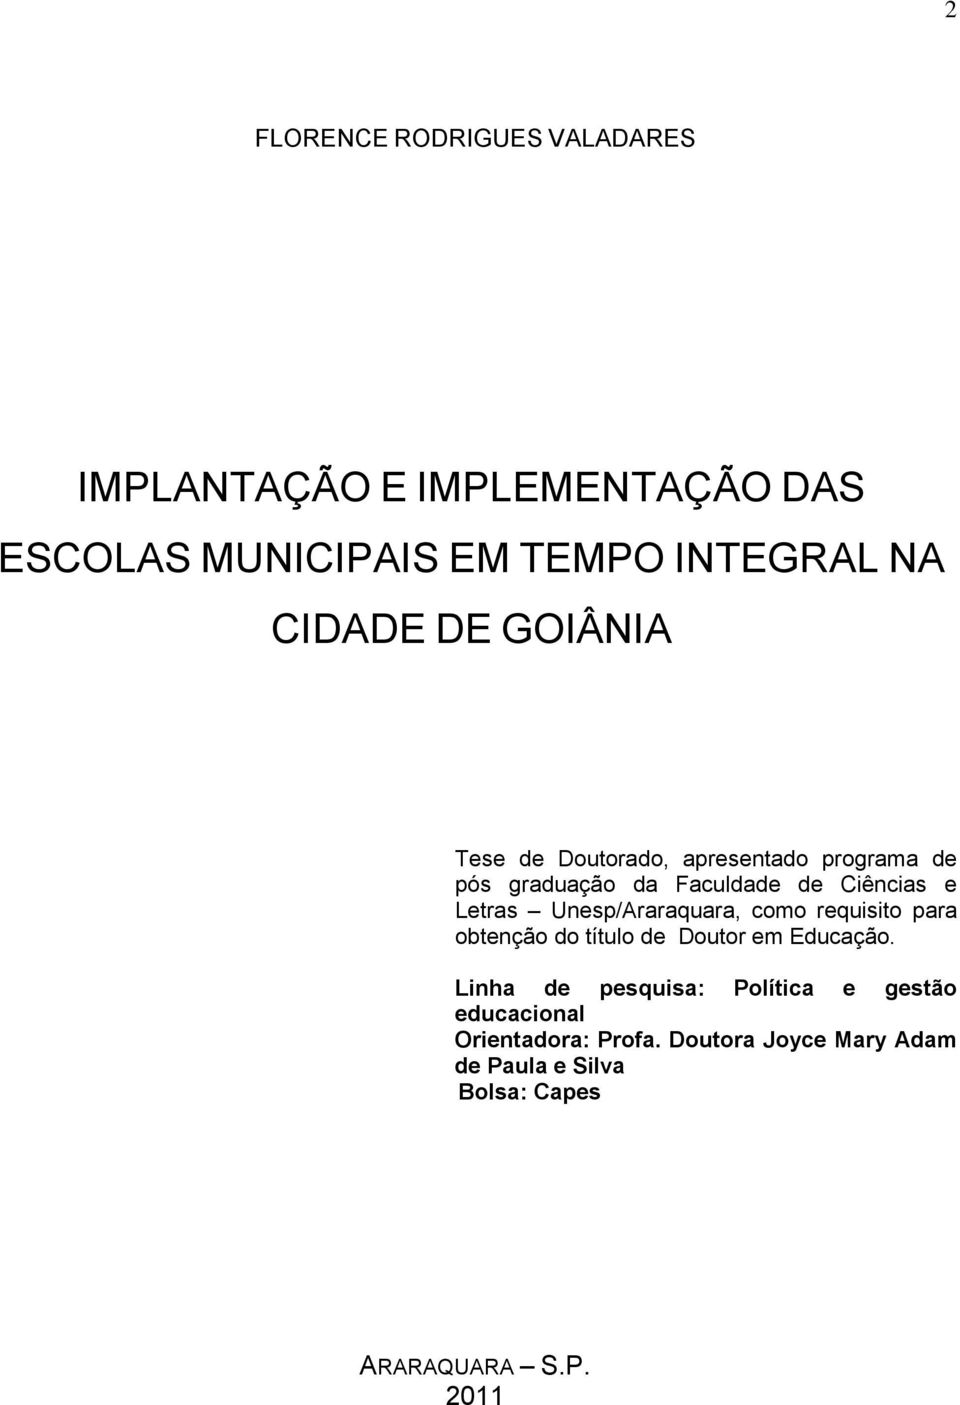 Unesp/Araraquara, como requisito para obtenção do título de Doutor em Educação.